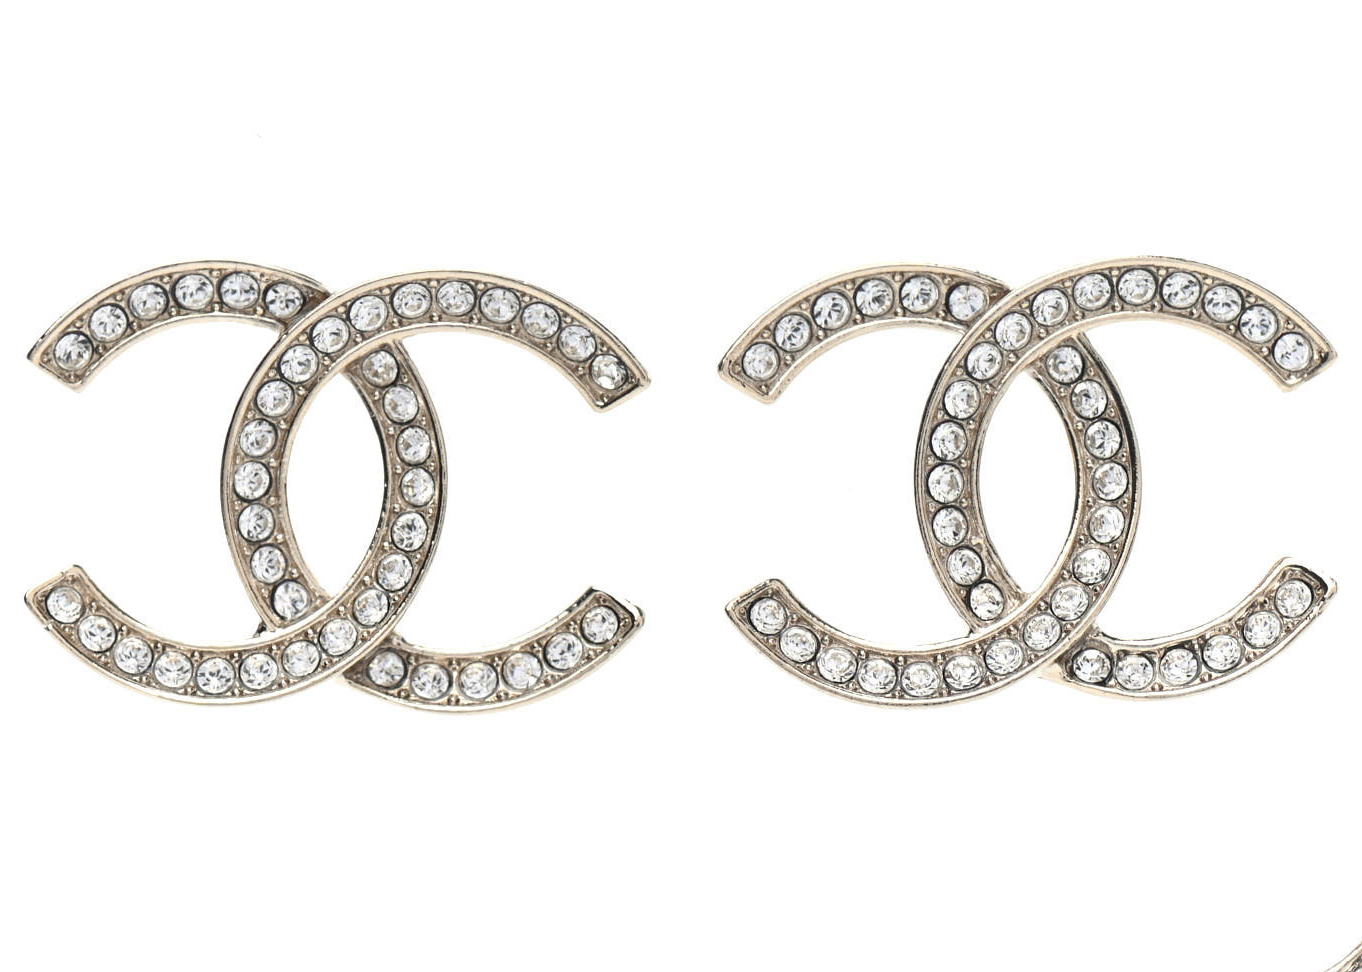 Buy CHANEL Earrings Online  FASHIOLAcouk  Compare  buy  Chanel  earrings Vintage chanel earrings Online earrings